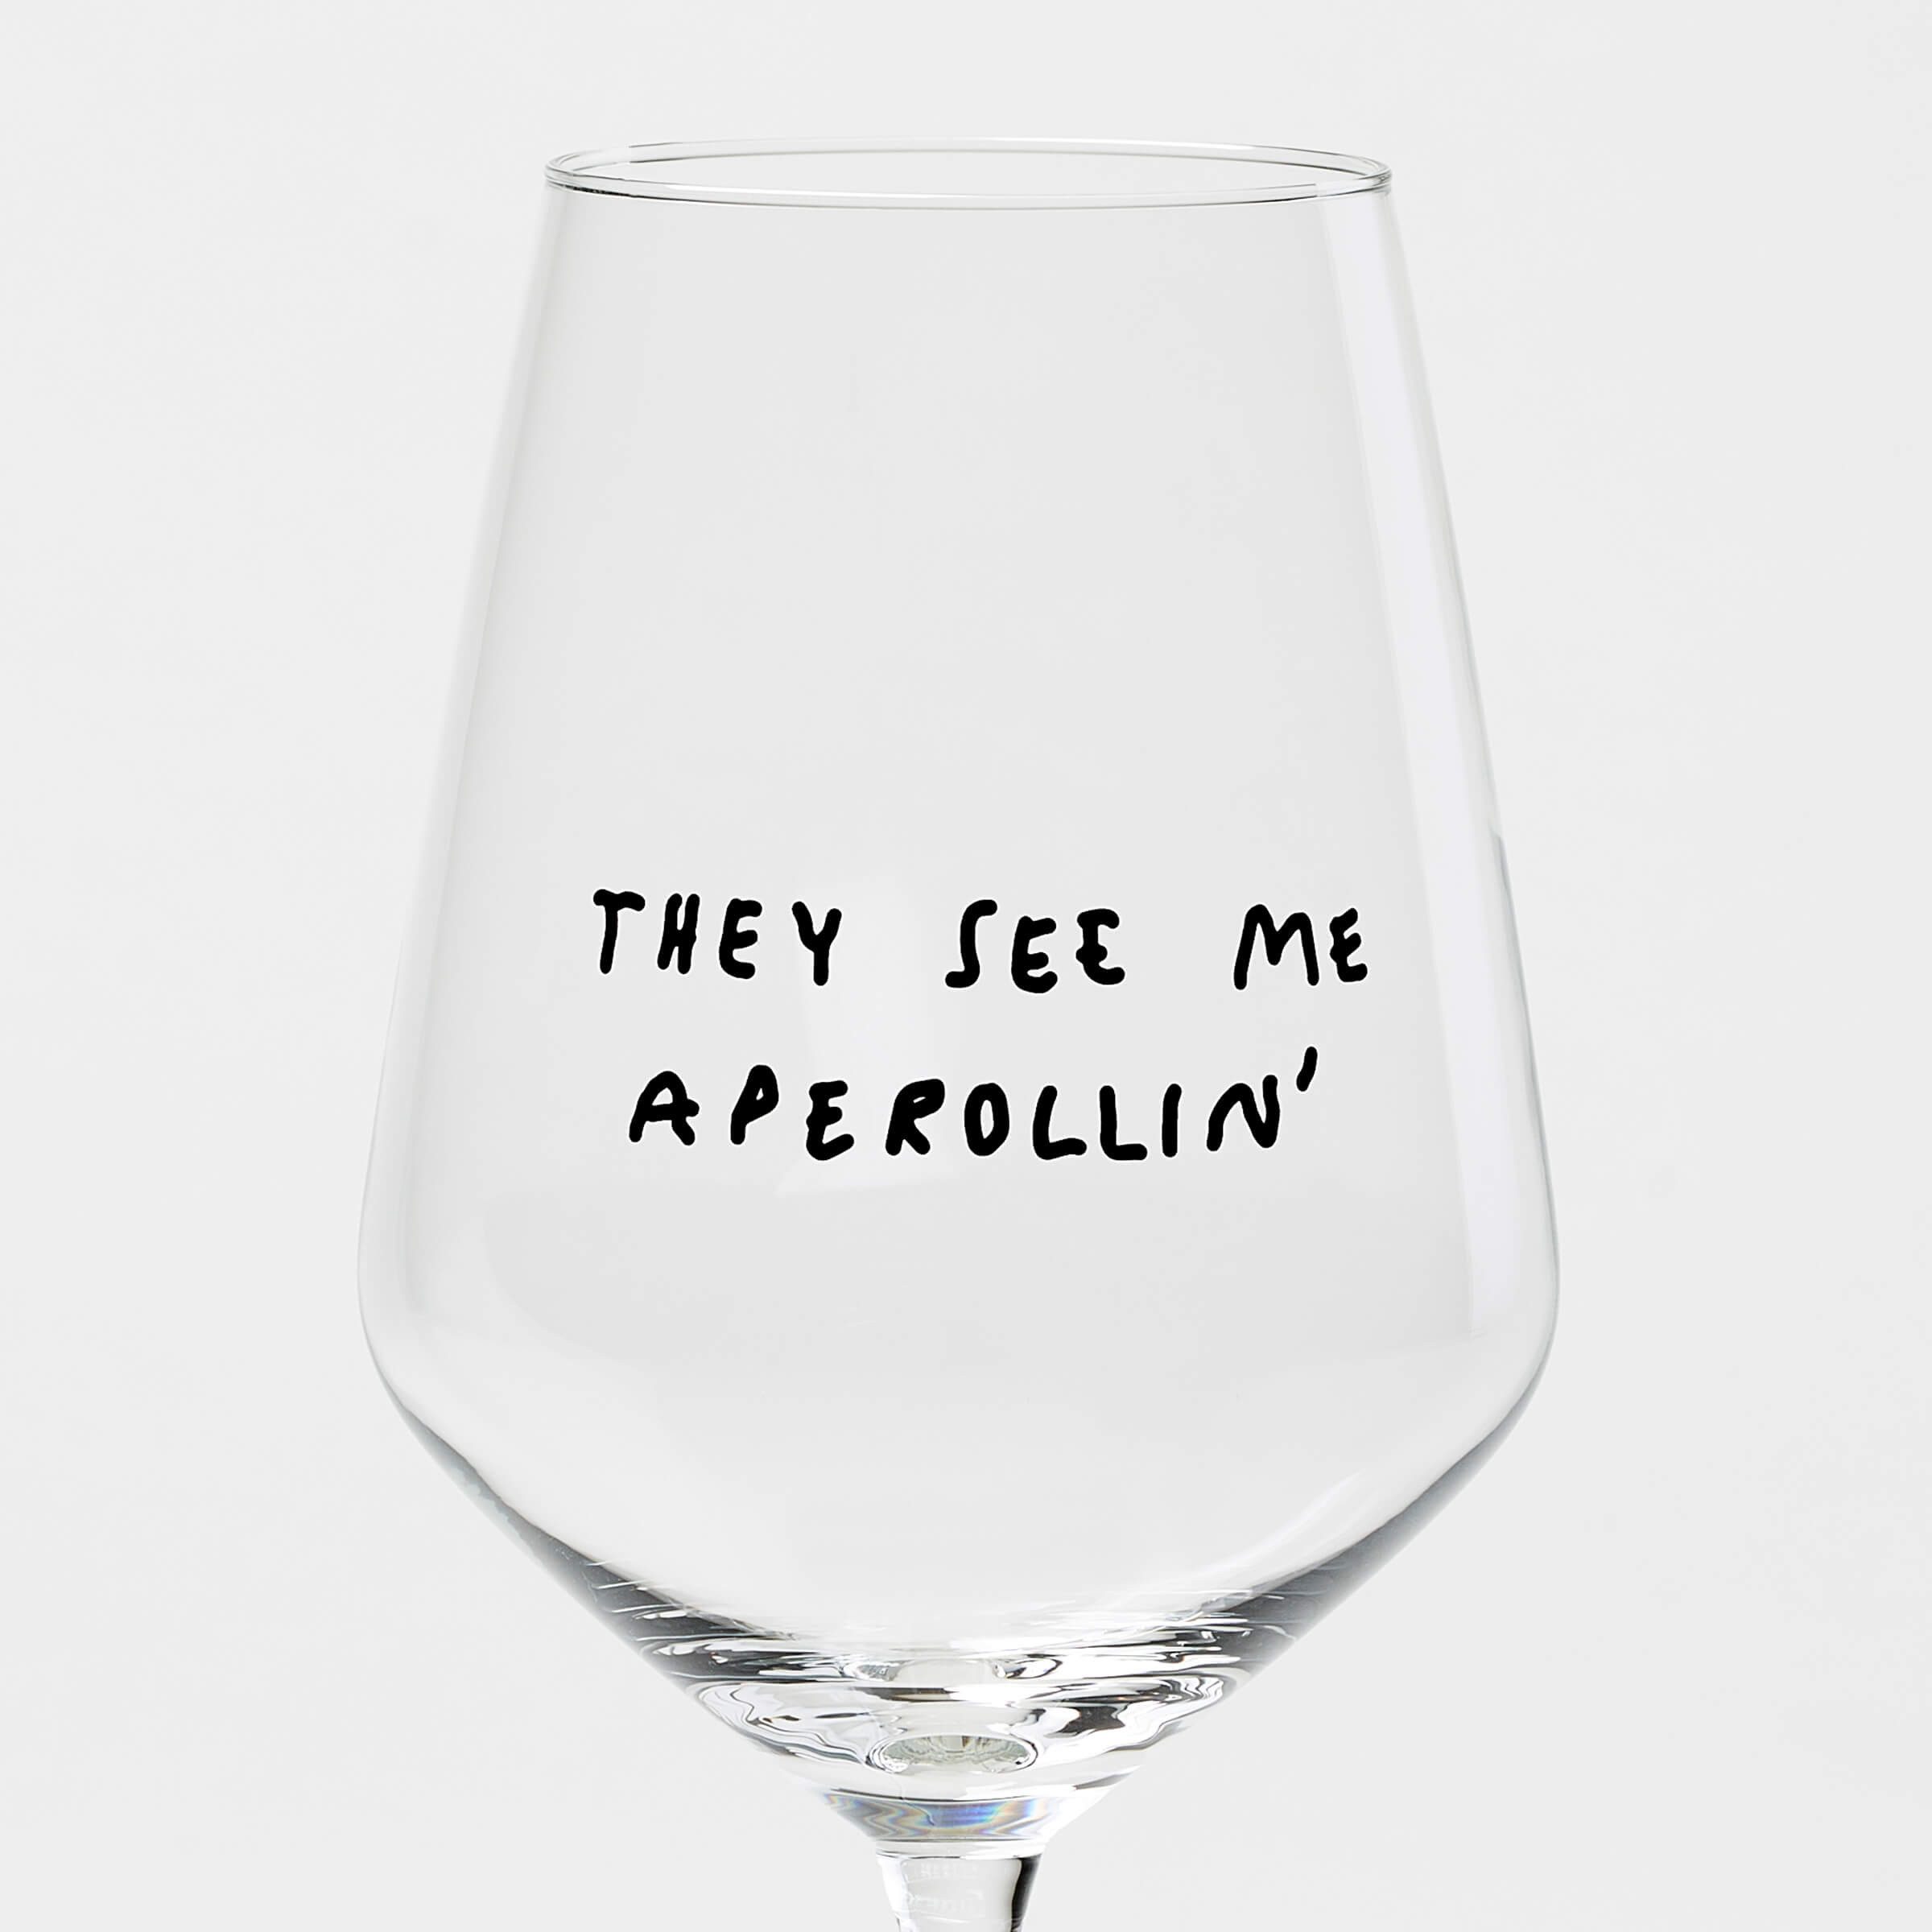 selekkt Weinglas "They See Me Aperollin'" Glas by Johanna Schwarzer × selekkt